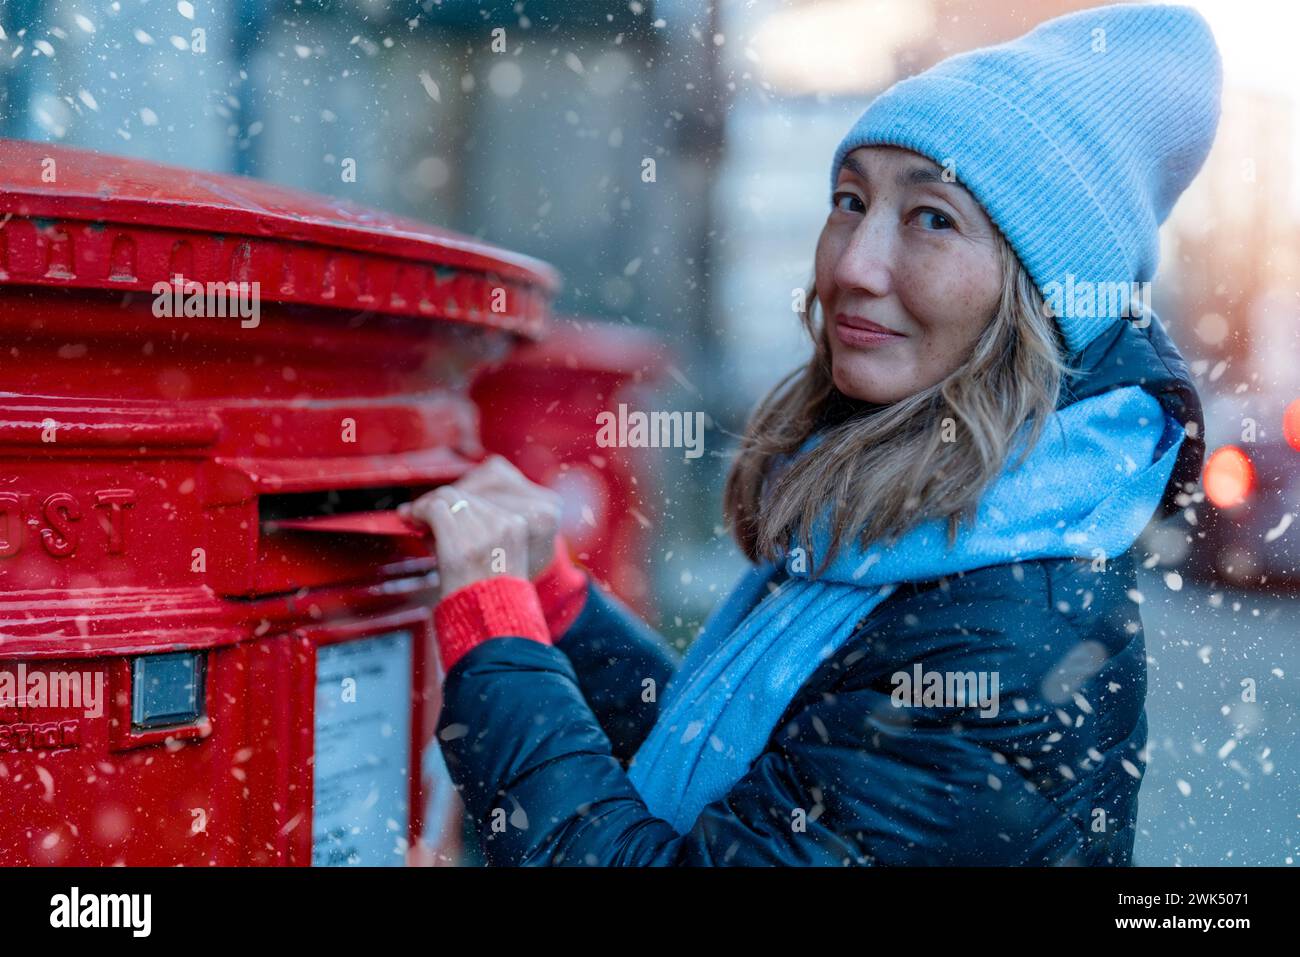 femme mettant une carte à la boîte postale rouge et marchant autour Ville anglaise Banque D'Images